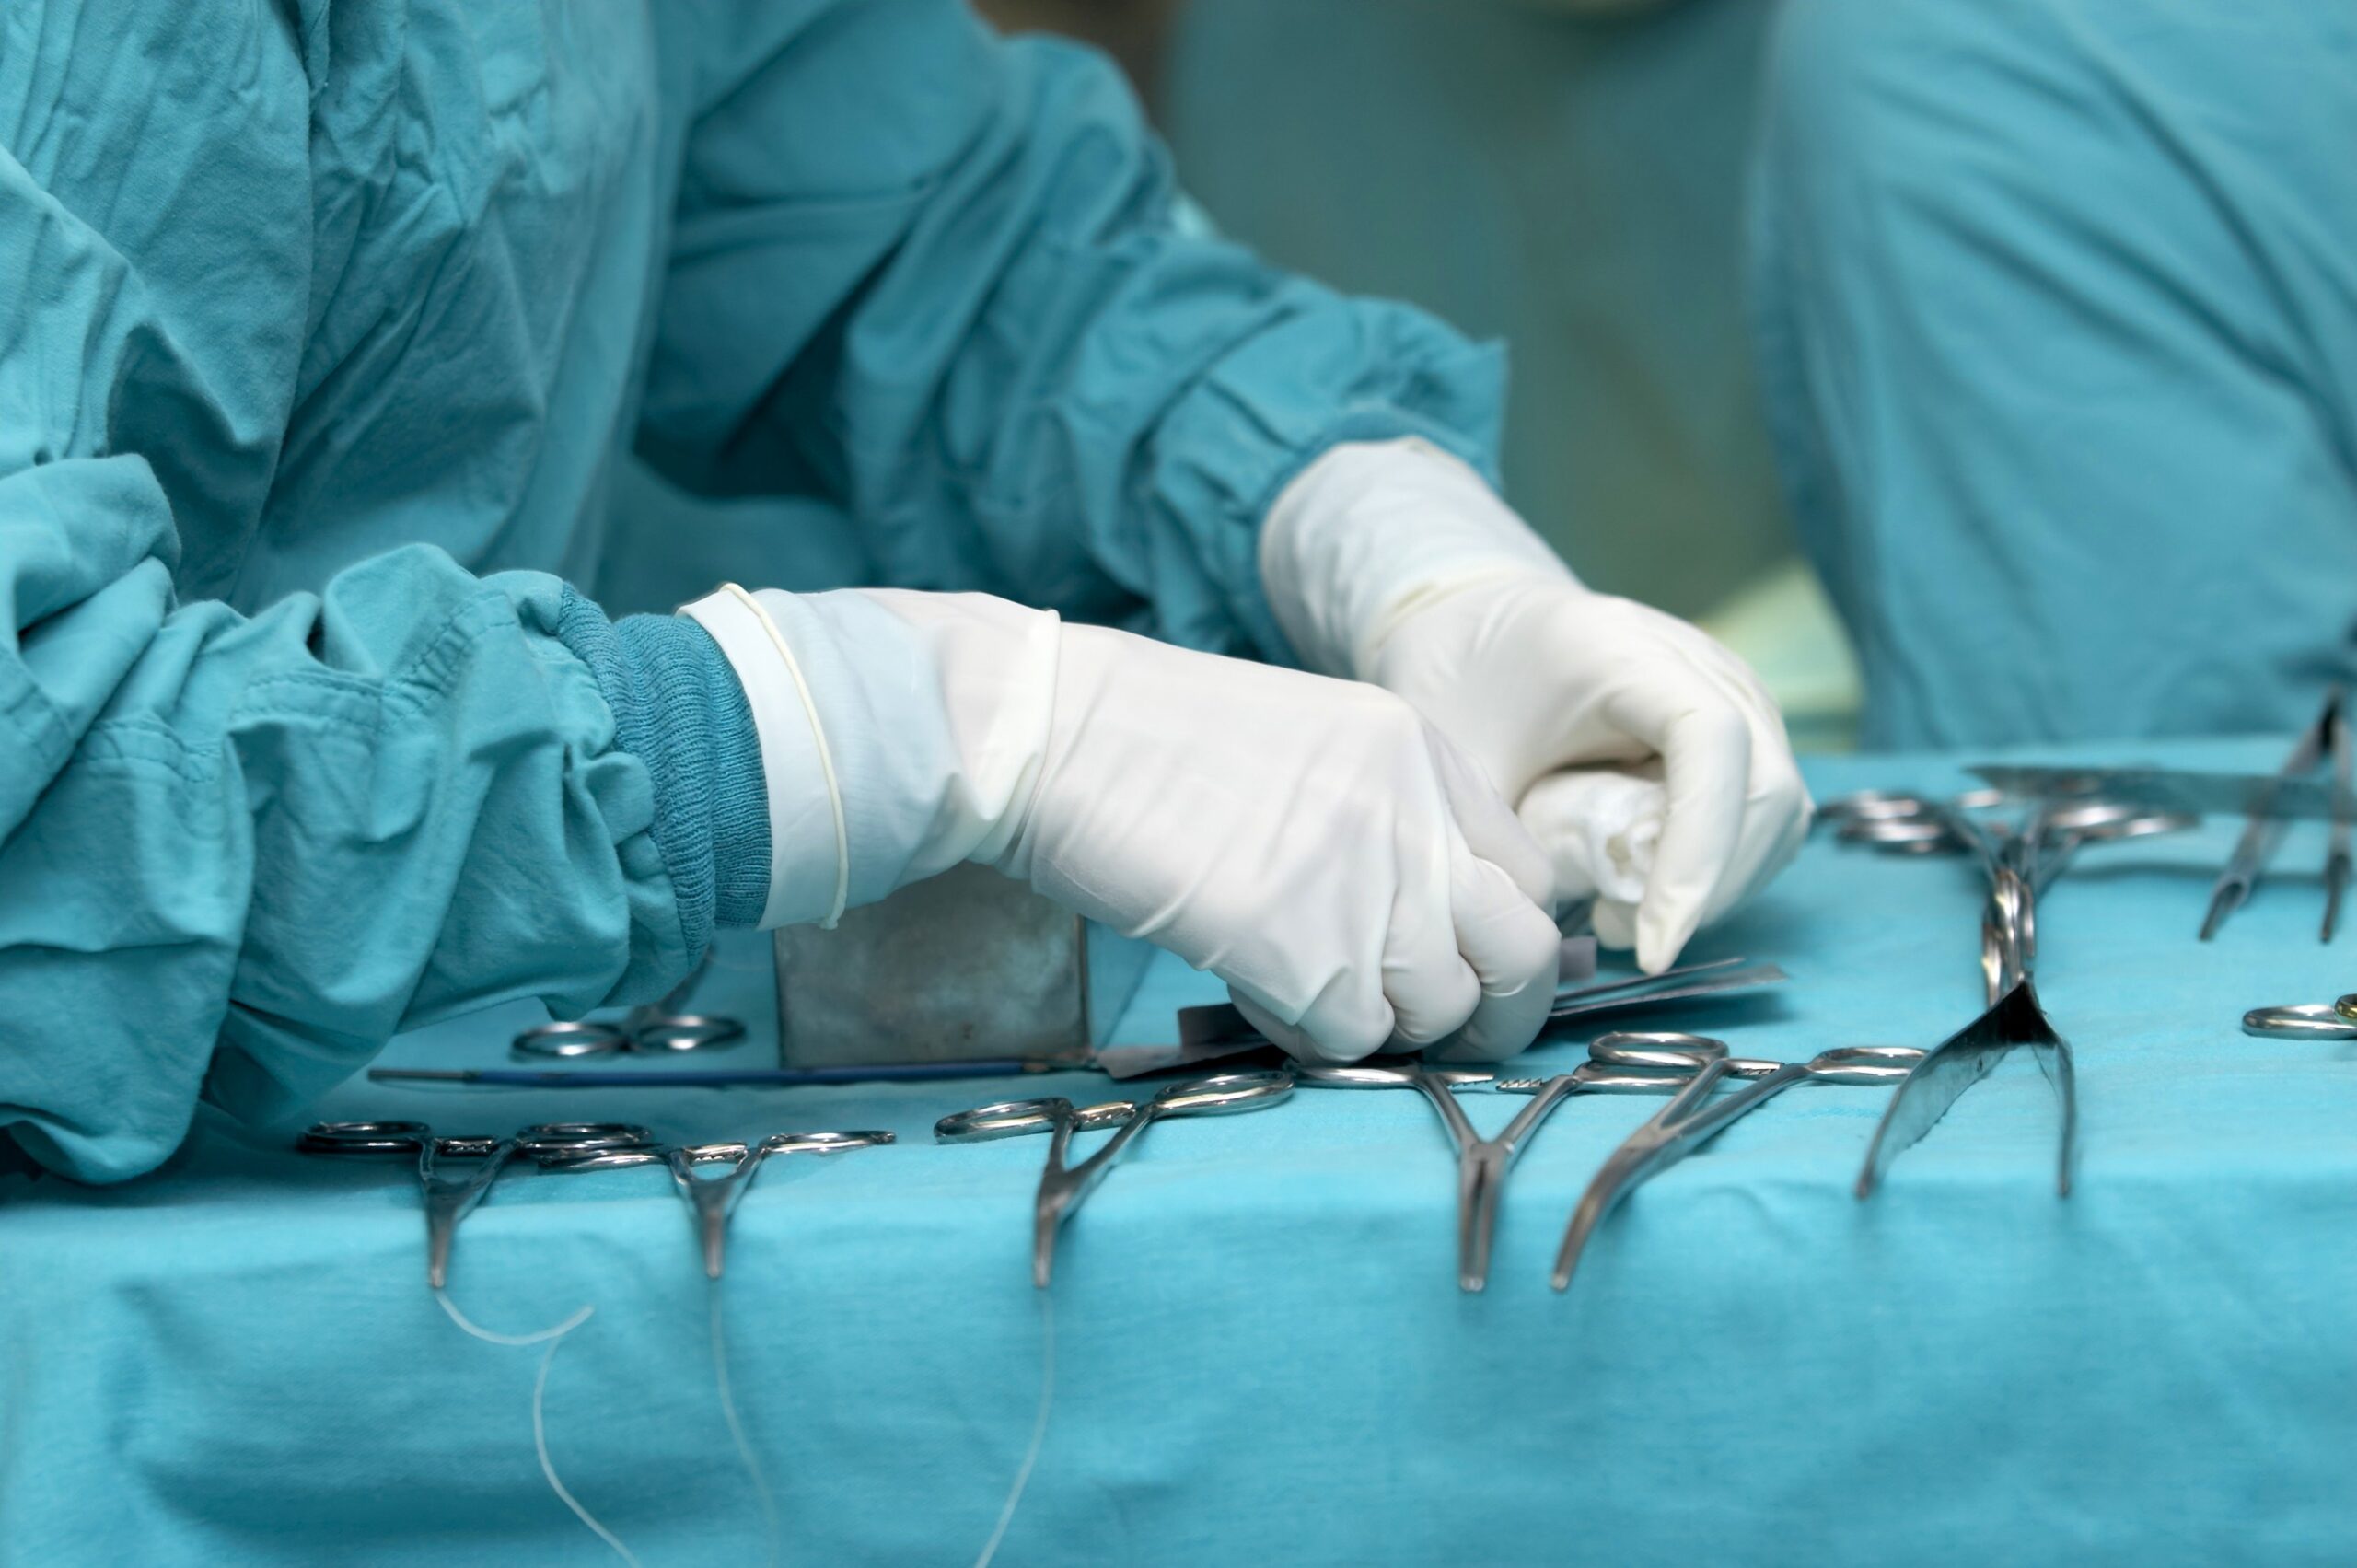 Московские хирурги провели сложную операцию по удалению части сердца и печени из-за рецидива опухоли 